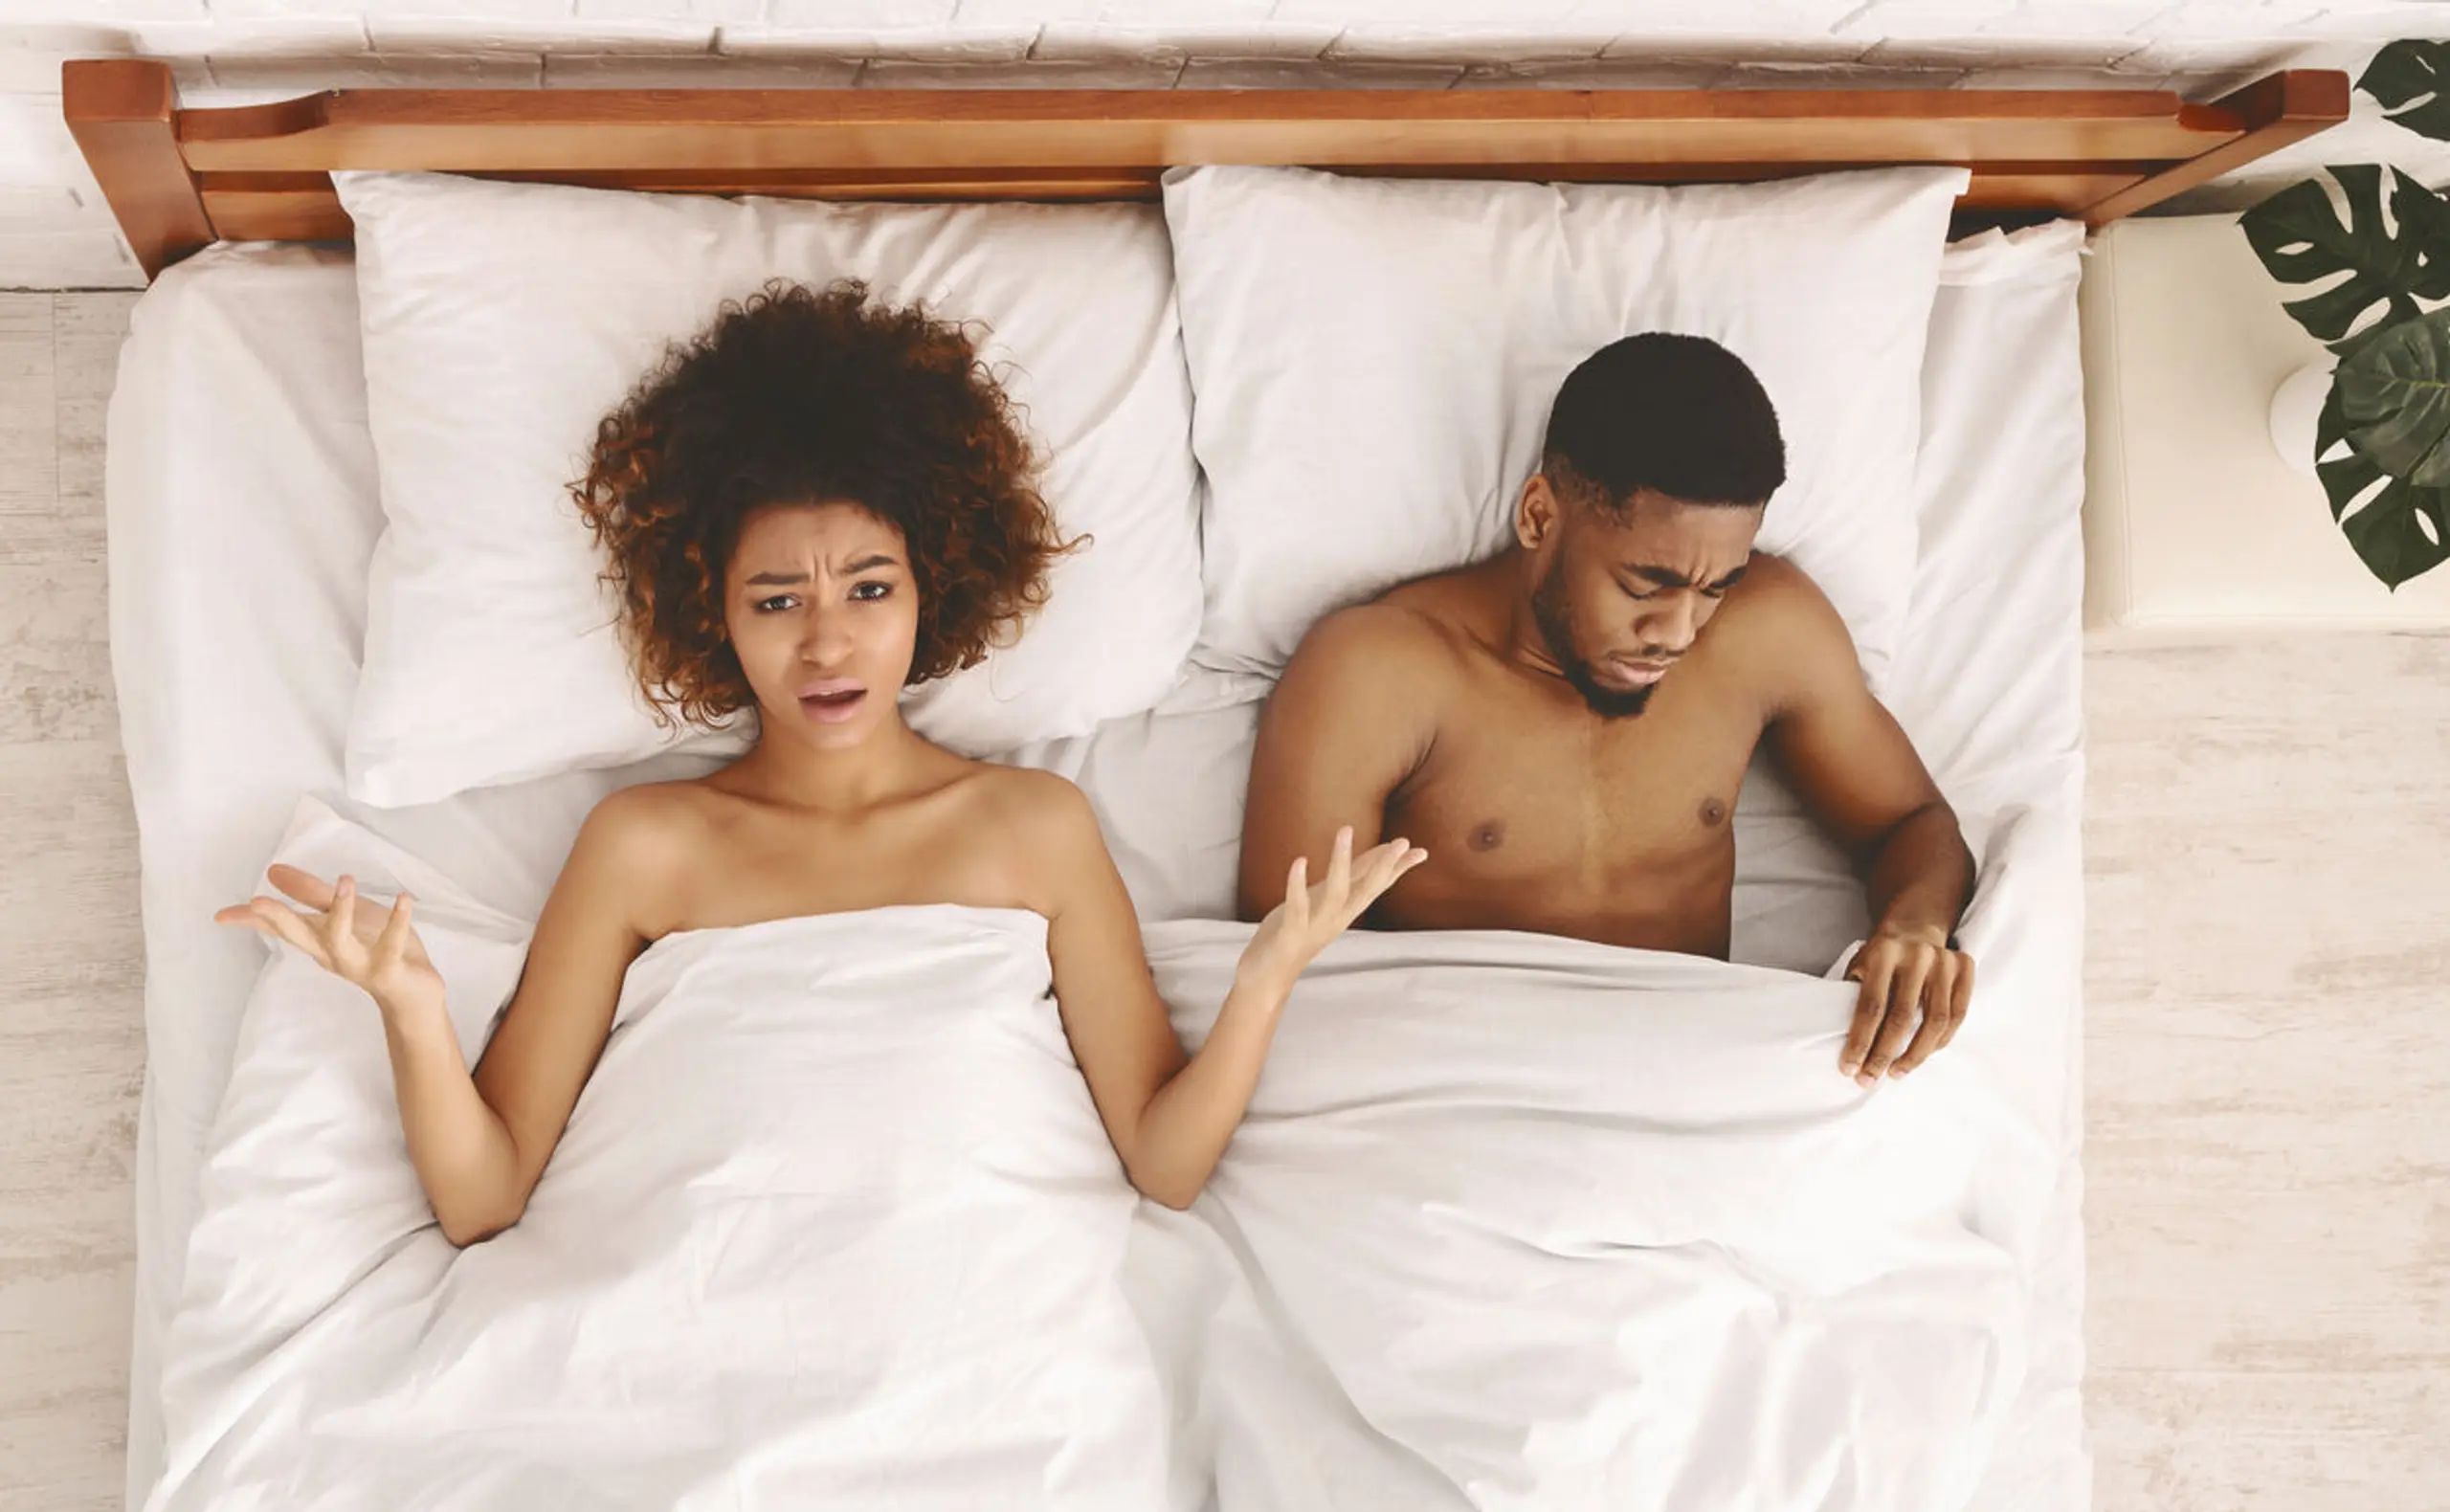 Mit dem Orgasmus des Mannes ist der Sex offiziell vorbei - warum eigentlich?